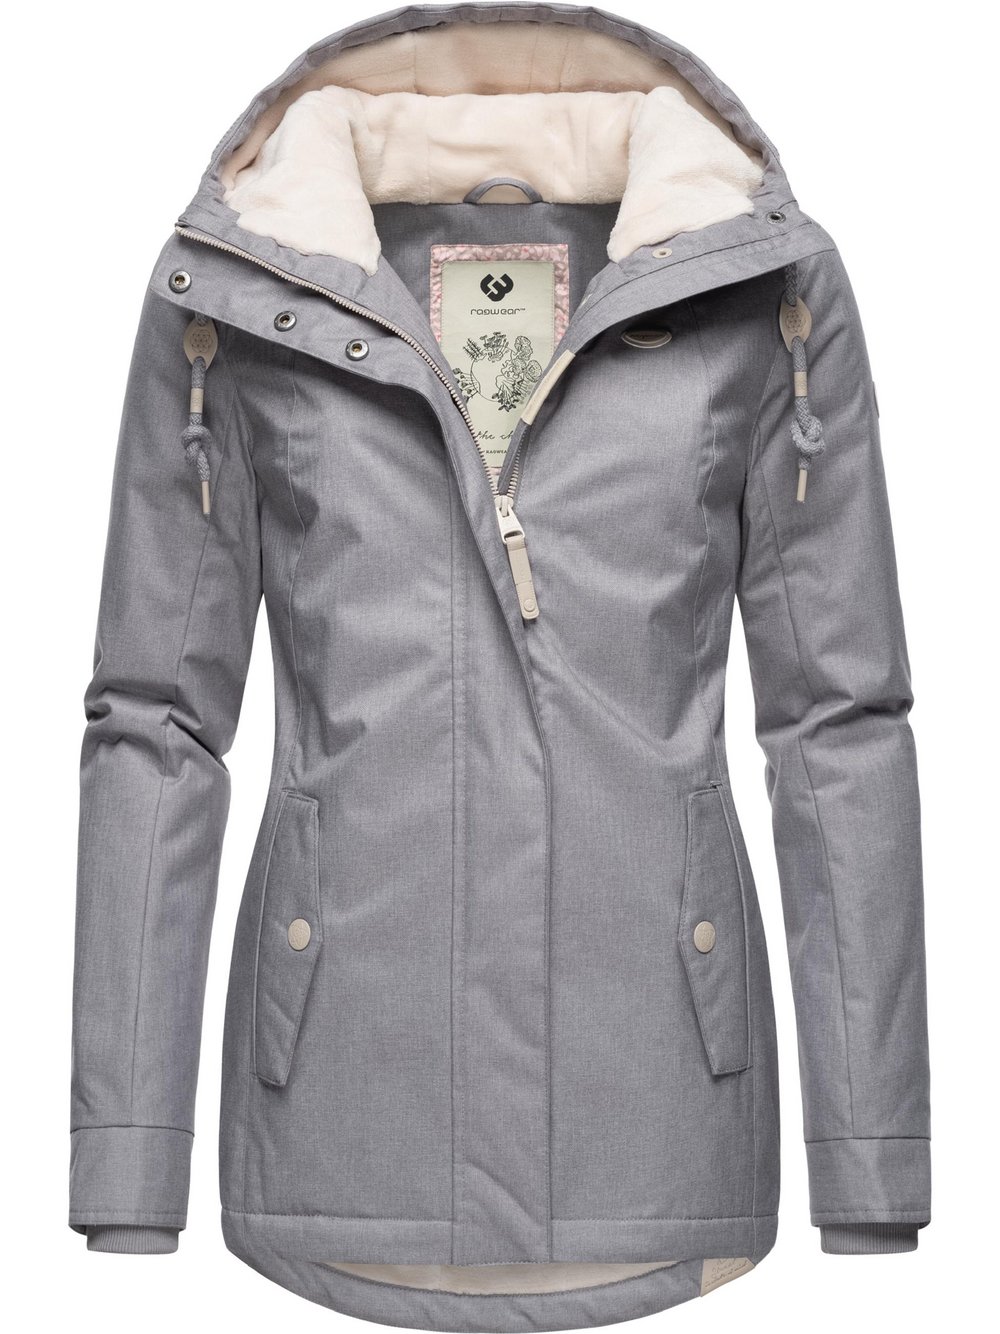 Preisvergleich für Ragwear Winterjacke Damen grau, L, aus Fleece, Größe L  (40), GTIN: 4064601715332 | Ladendirekt